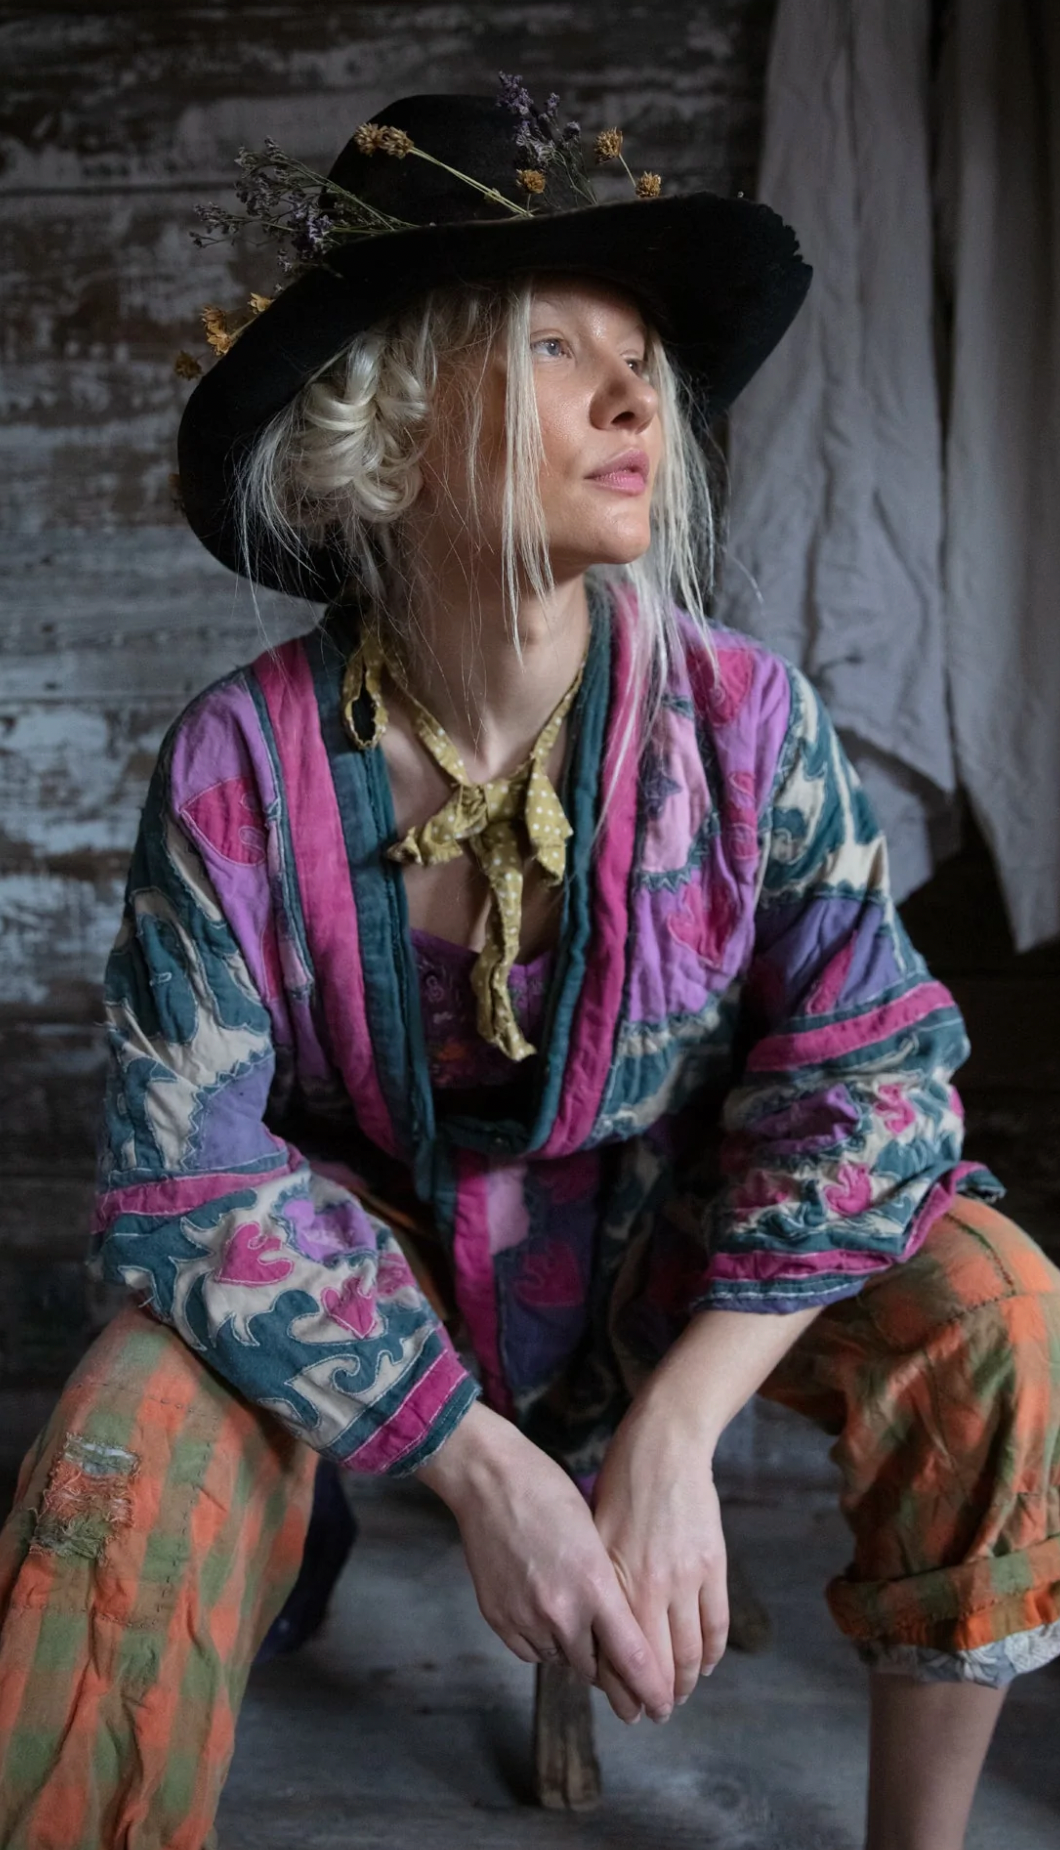 Appliqué Hippie Coat by Magnolia Pearl